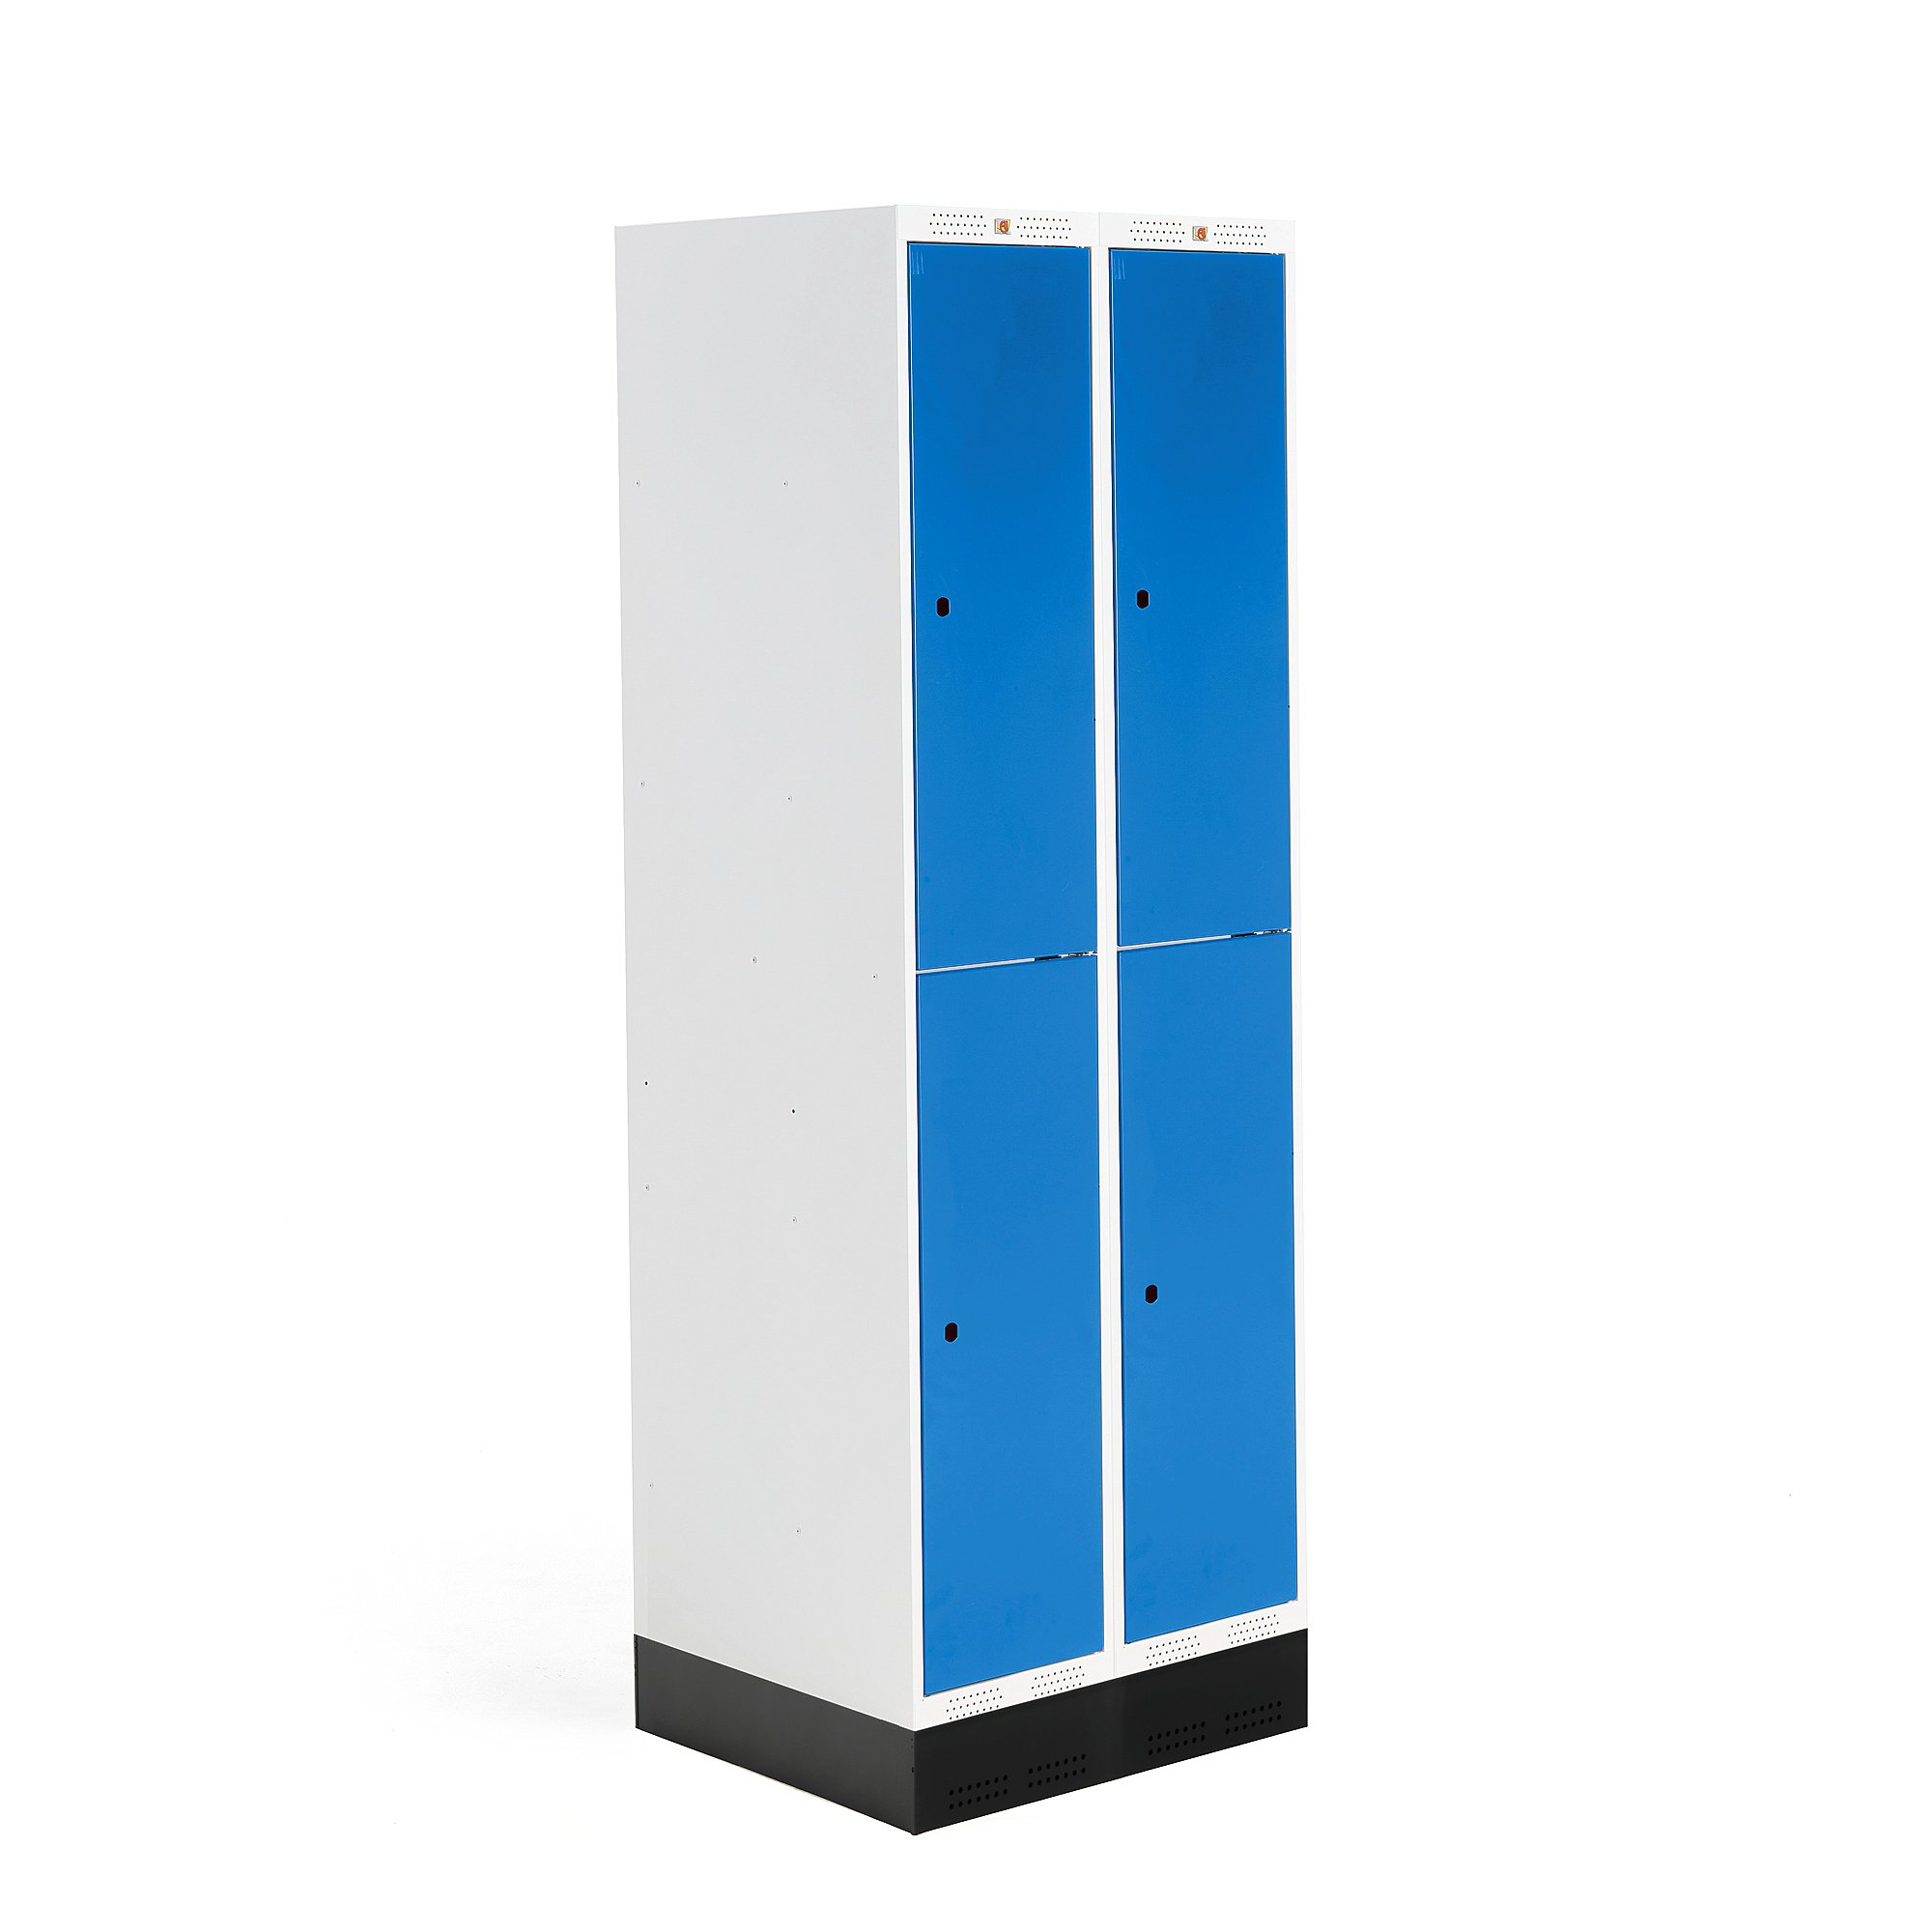 Šatní skříňka ROZ, 2 sekce, 4 boxy, se soklem, 1890x600x550 mm, modrá